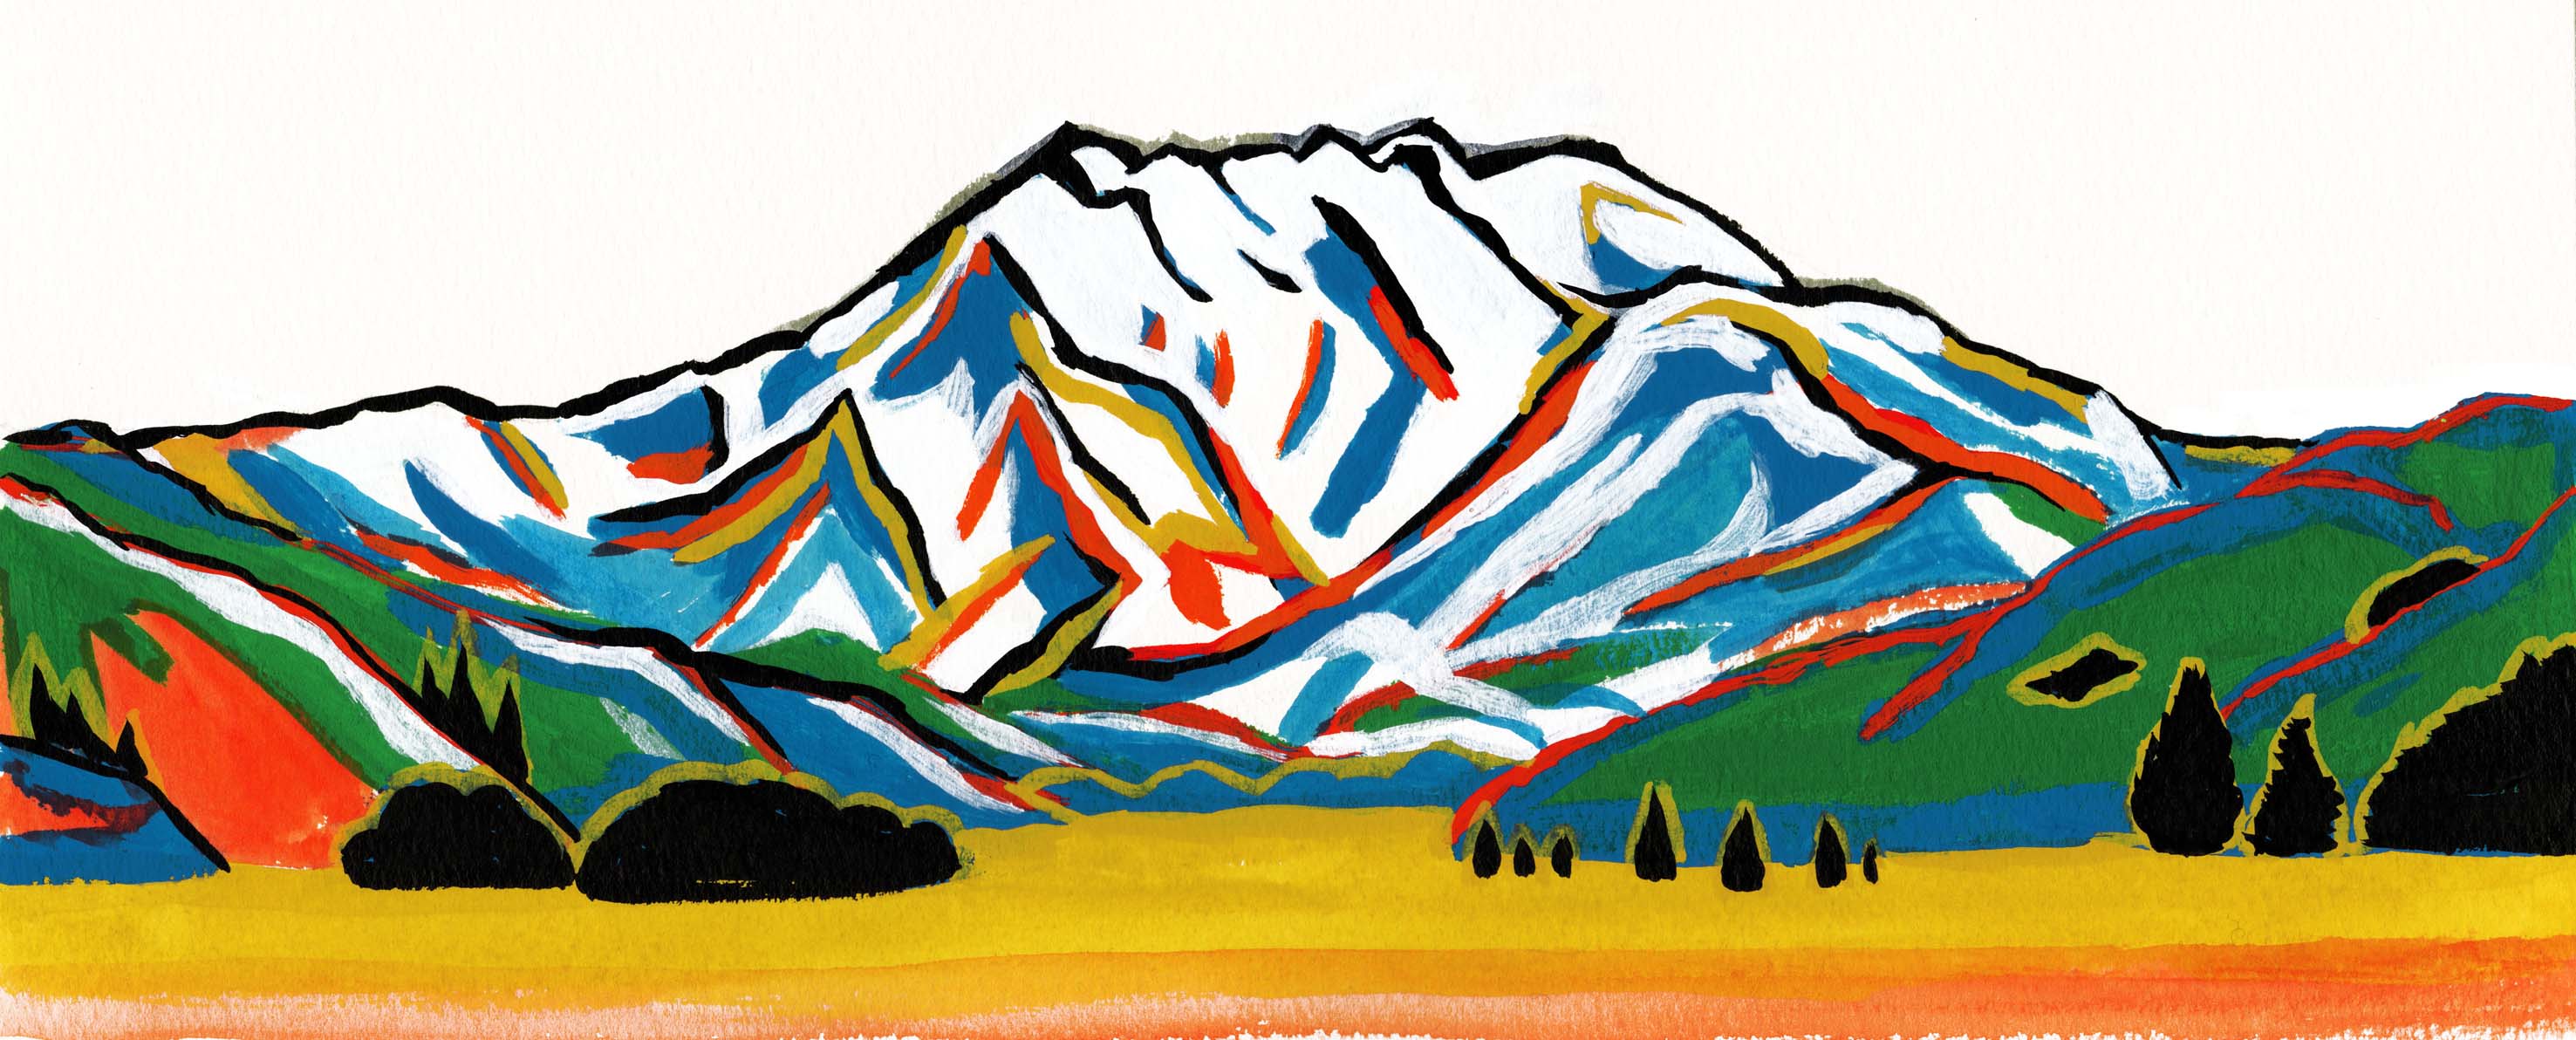 山のカラフルな絵画風イラスト